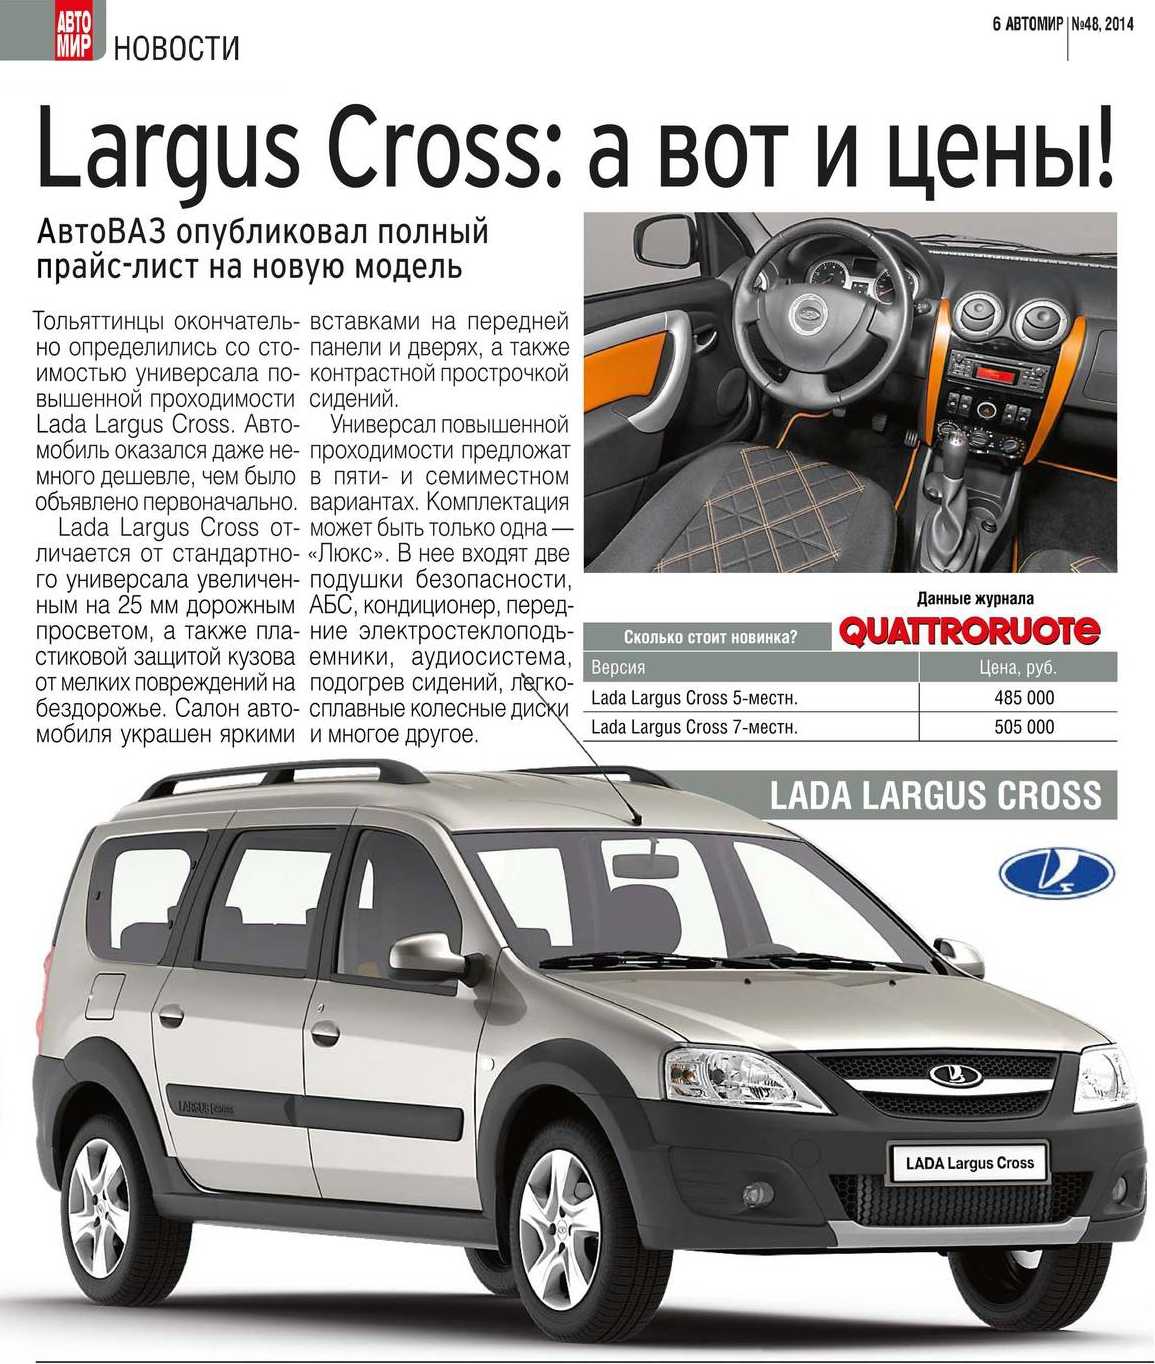 Большую популярность фургон «Лада-Ларгус» получил еще в 2012 году, когда впервые автомобиль поступил на отечественный рынок, буквально сразу